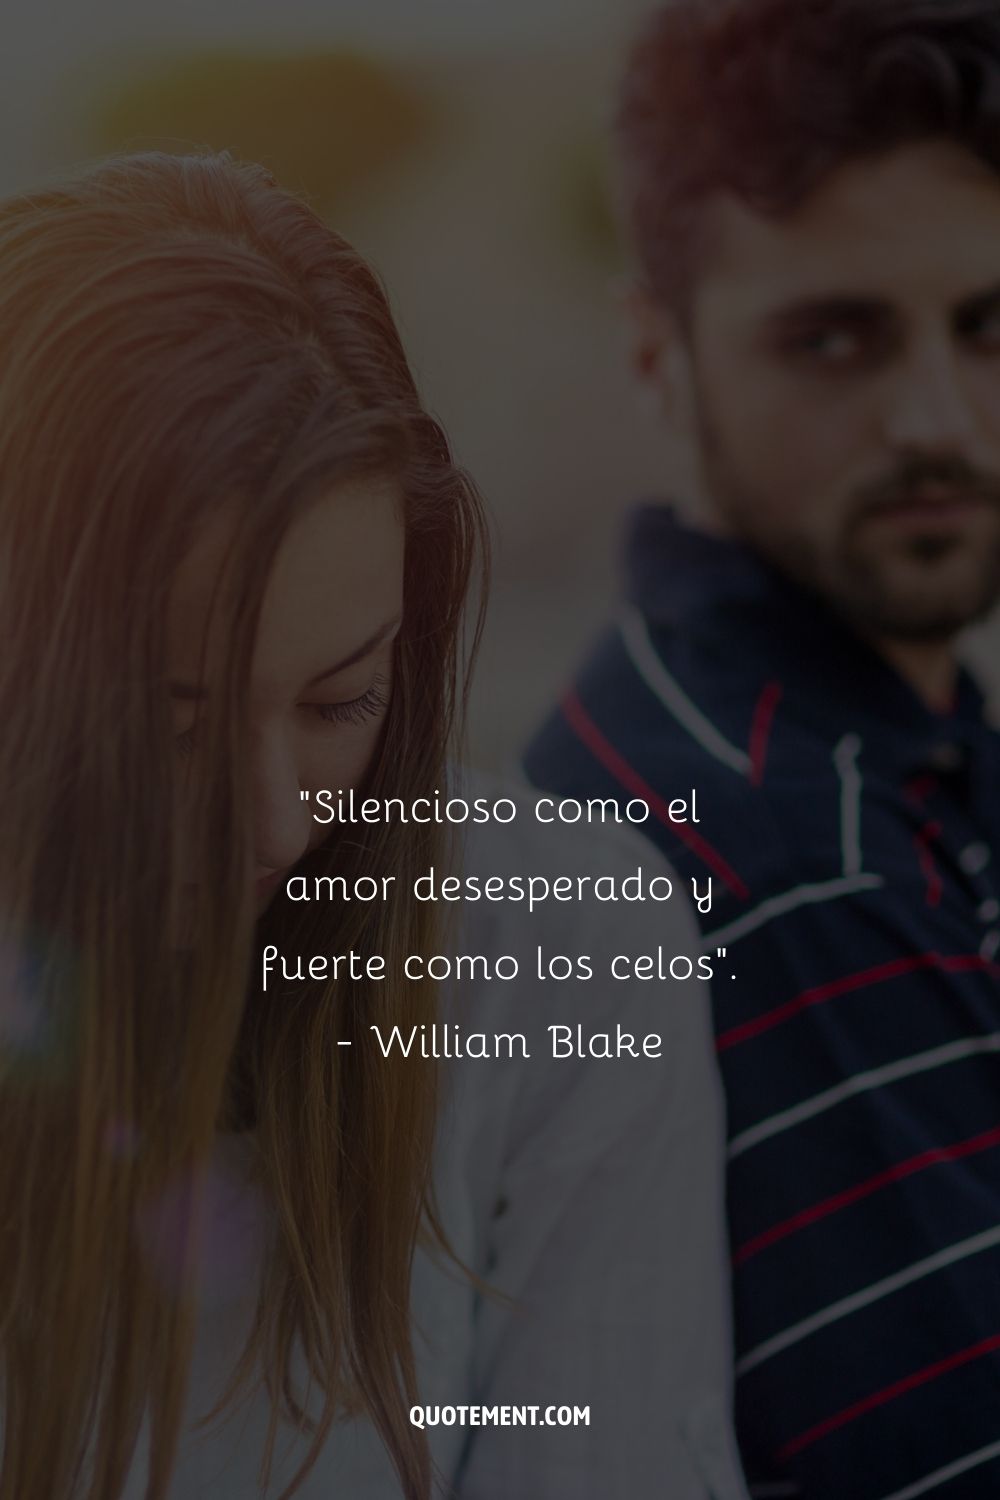 "Silencioso como el amor desesperado y fuerte como los celos". - William Blake